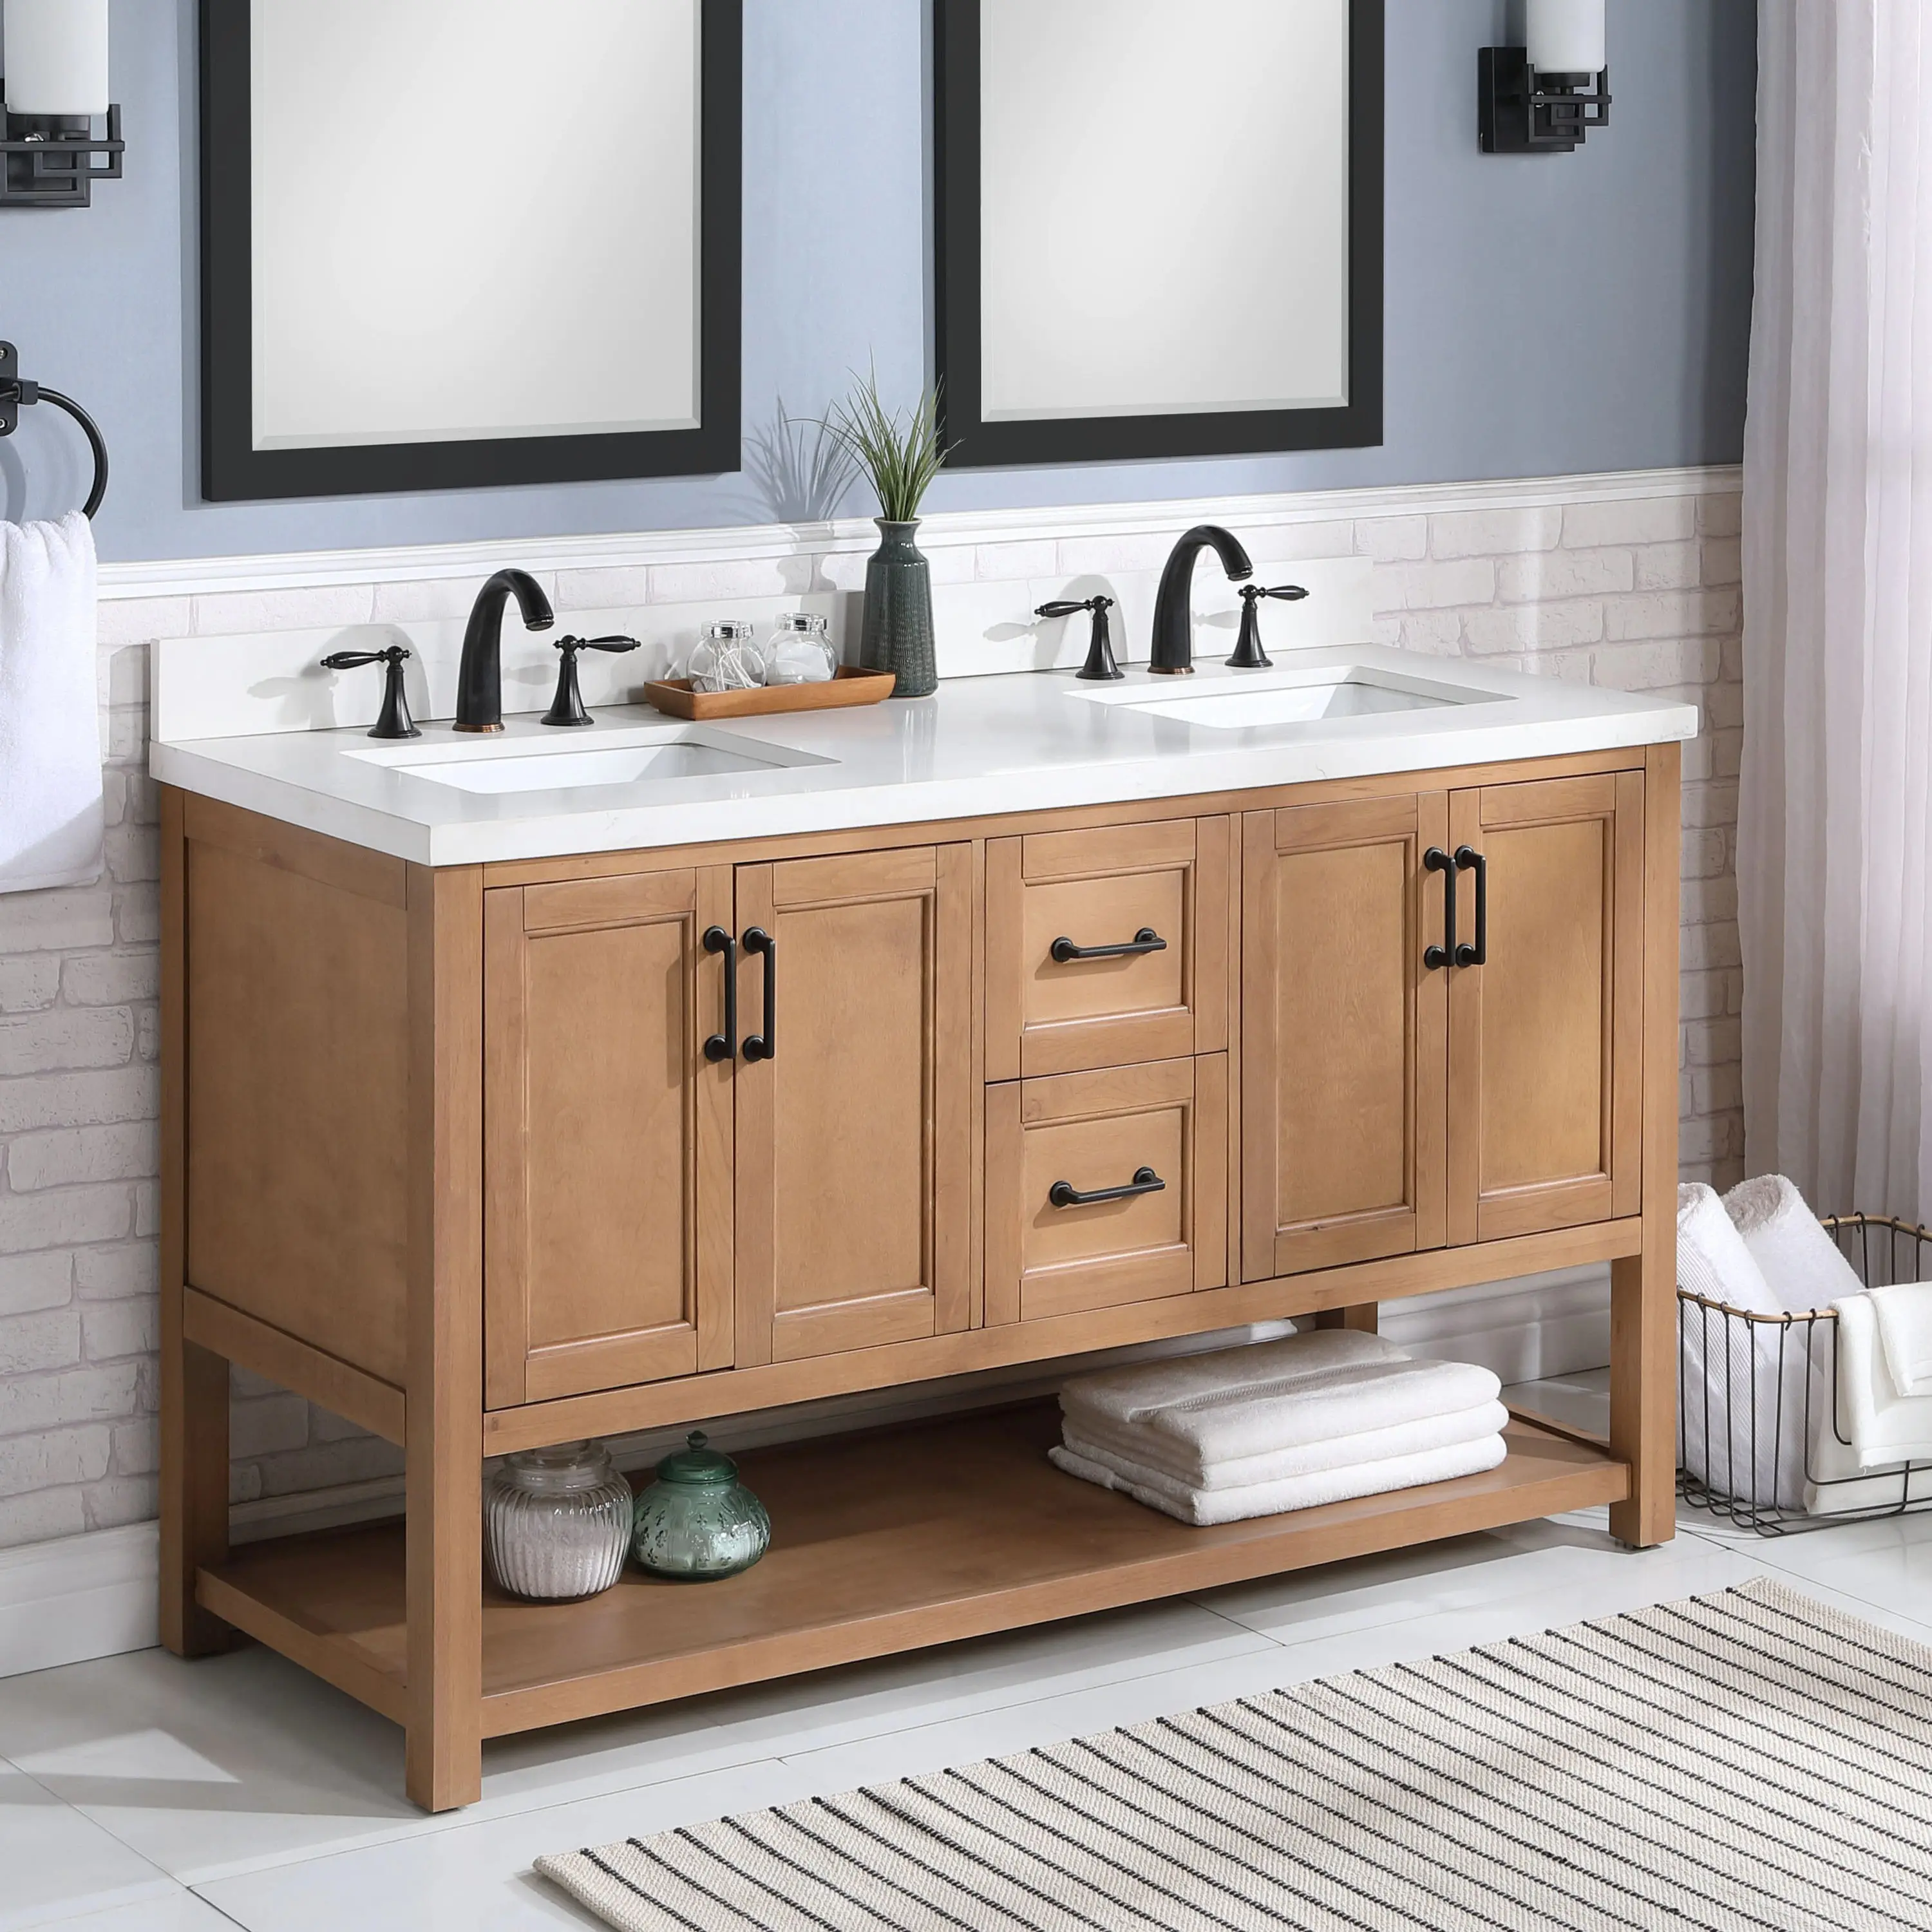 Barato branco oak mármore banheiro vanity armário do banheiro vanity dupla pia para venda